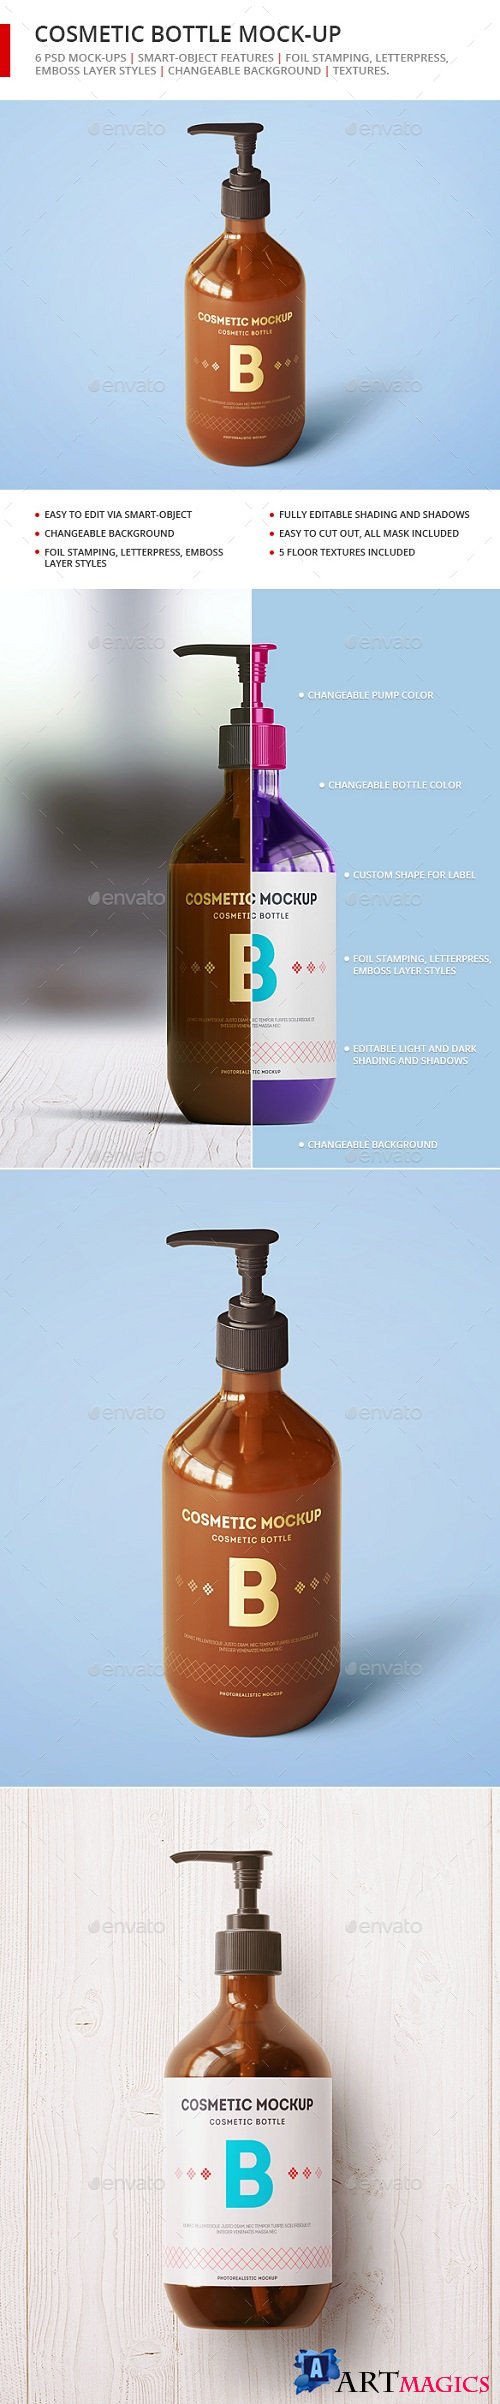 Cosmetic Bottle Mock-up - Dispenser Bottle - 21280835